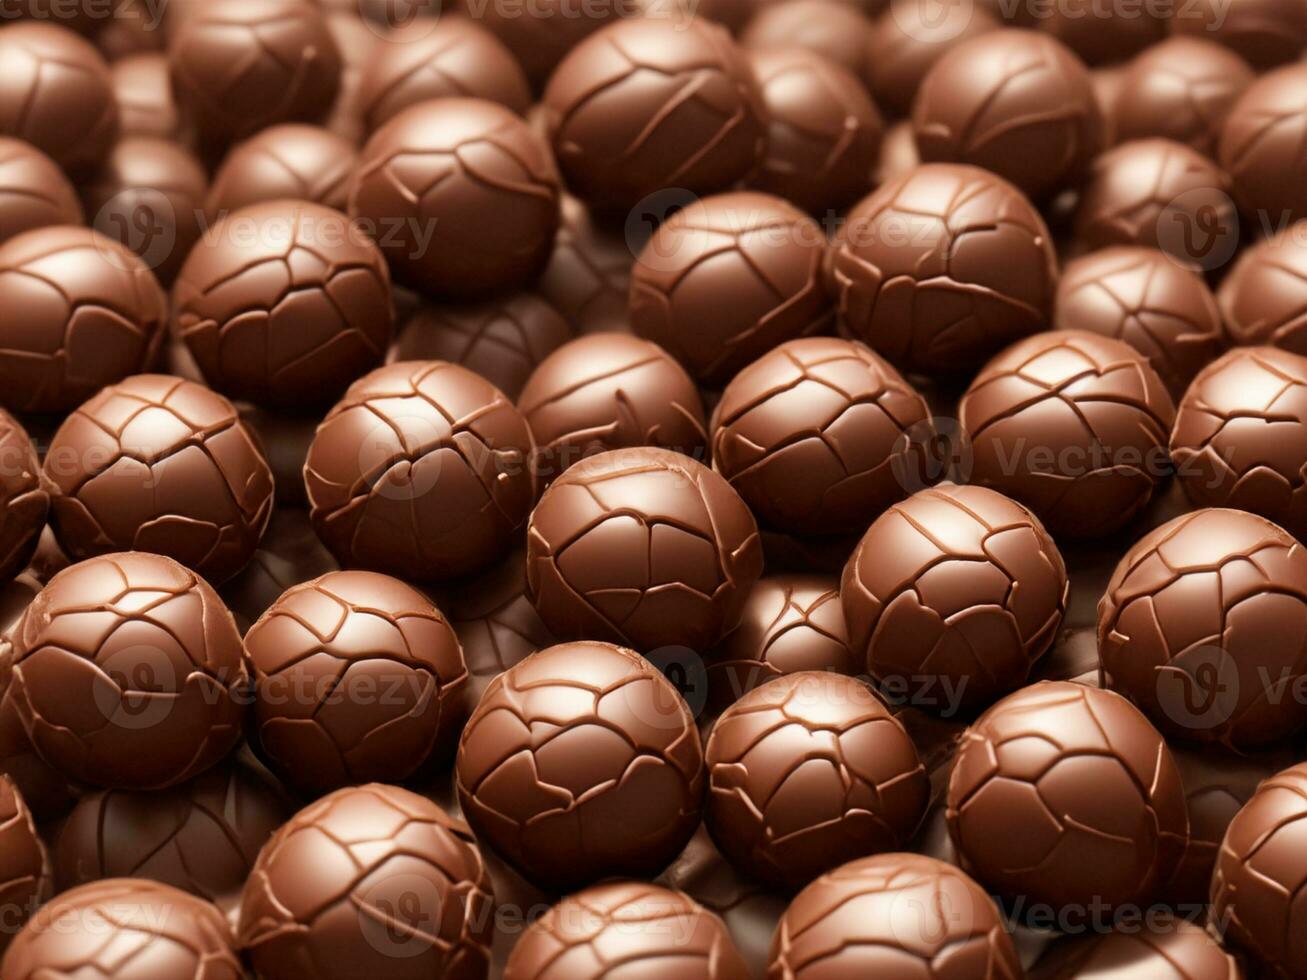 chocolate pelotas en un cuenco foto